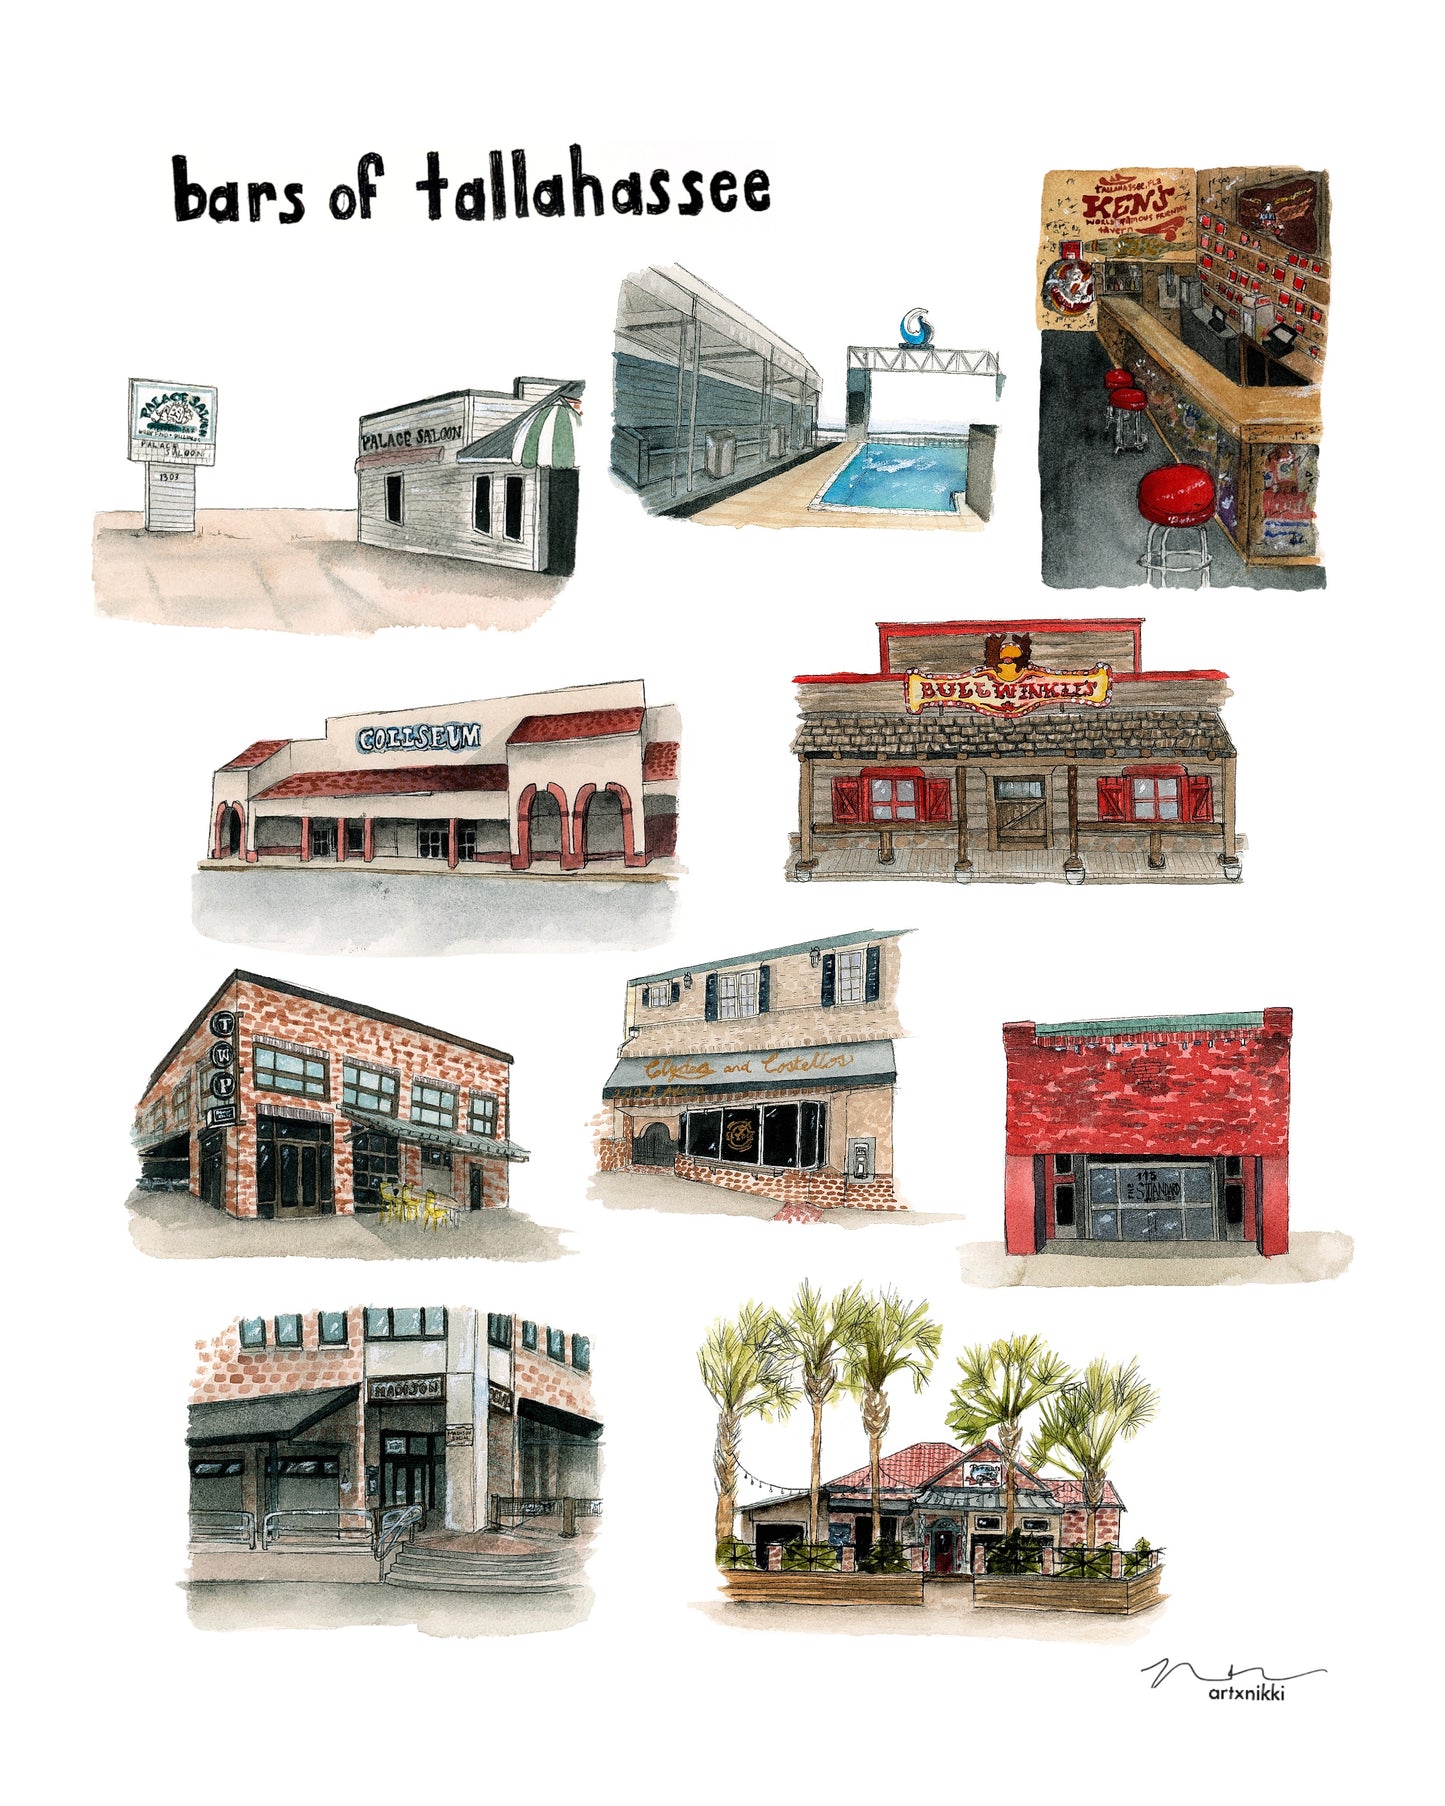 Bars of Tallahassee Print